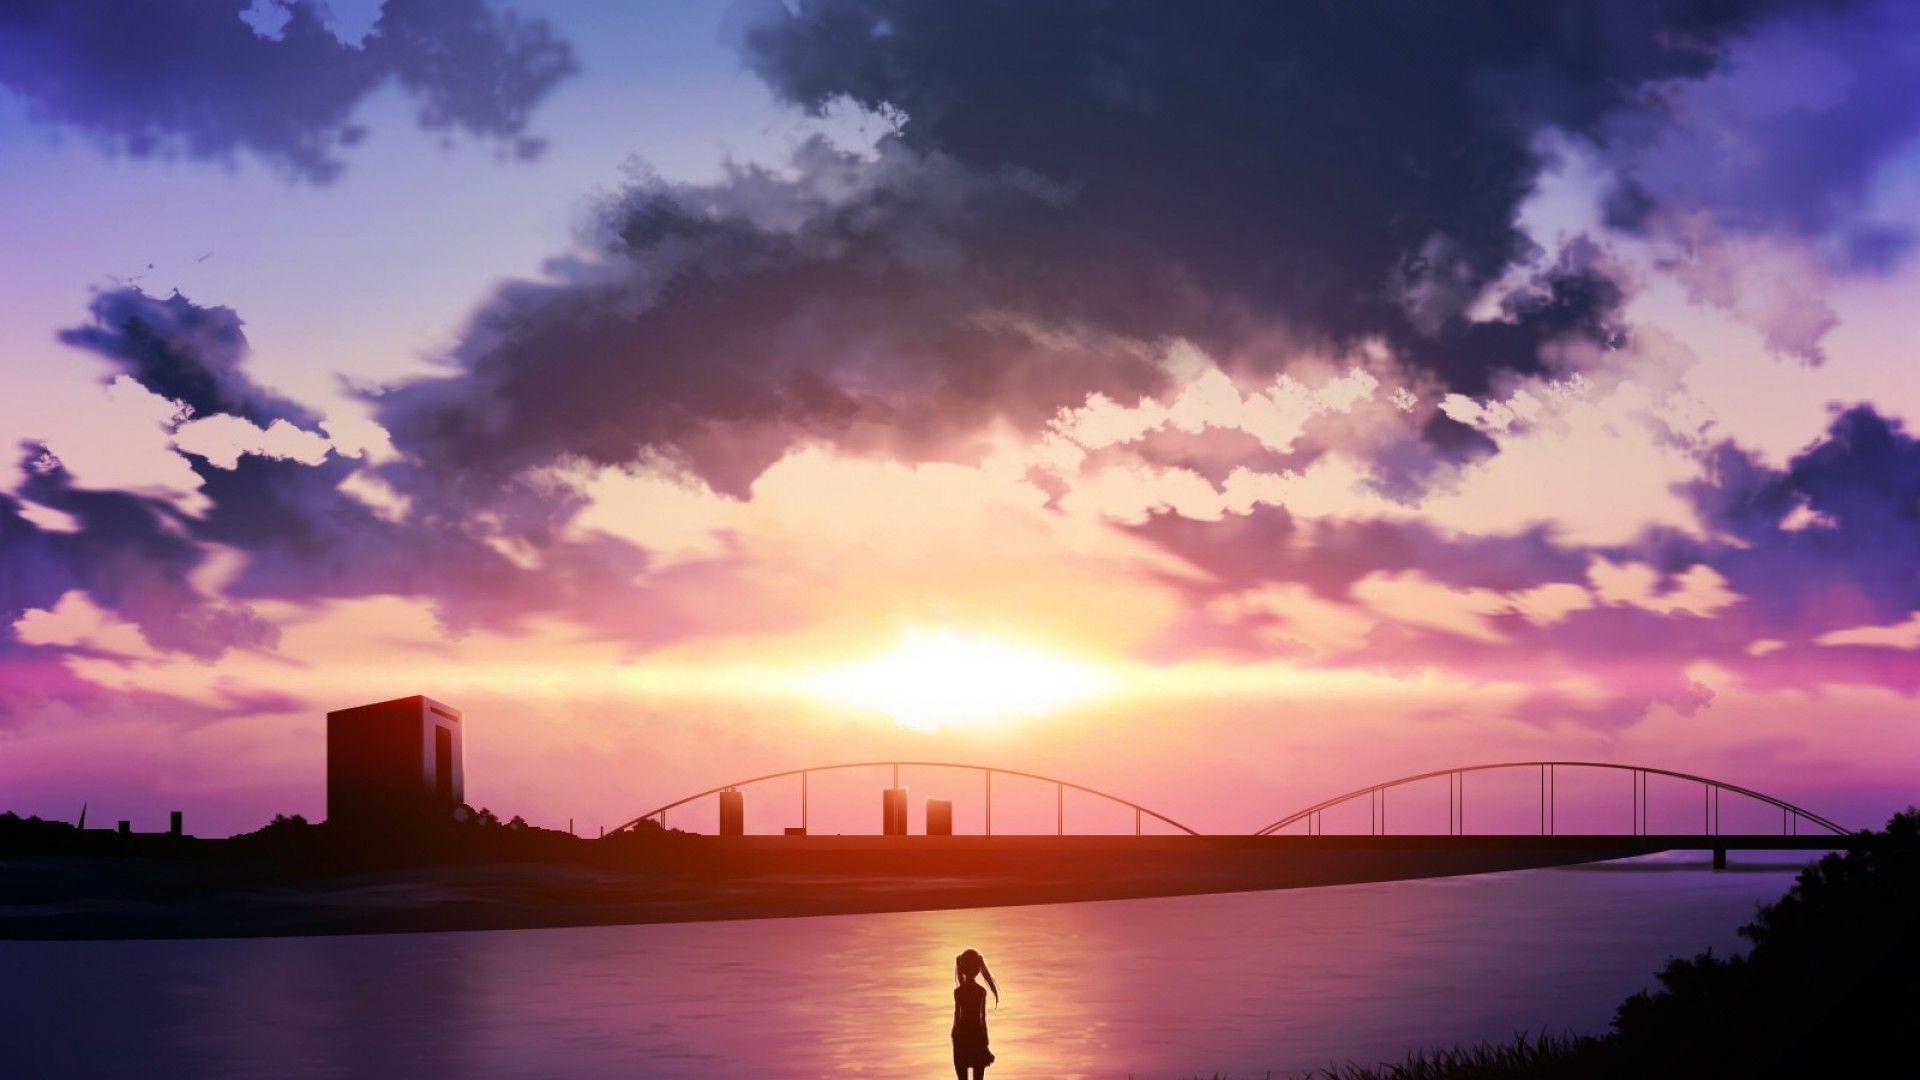 romantic anime scenery